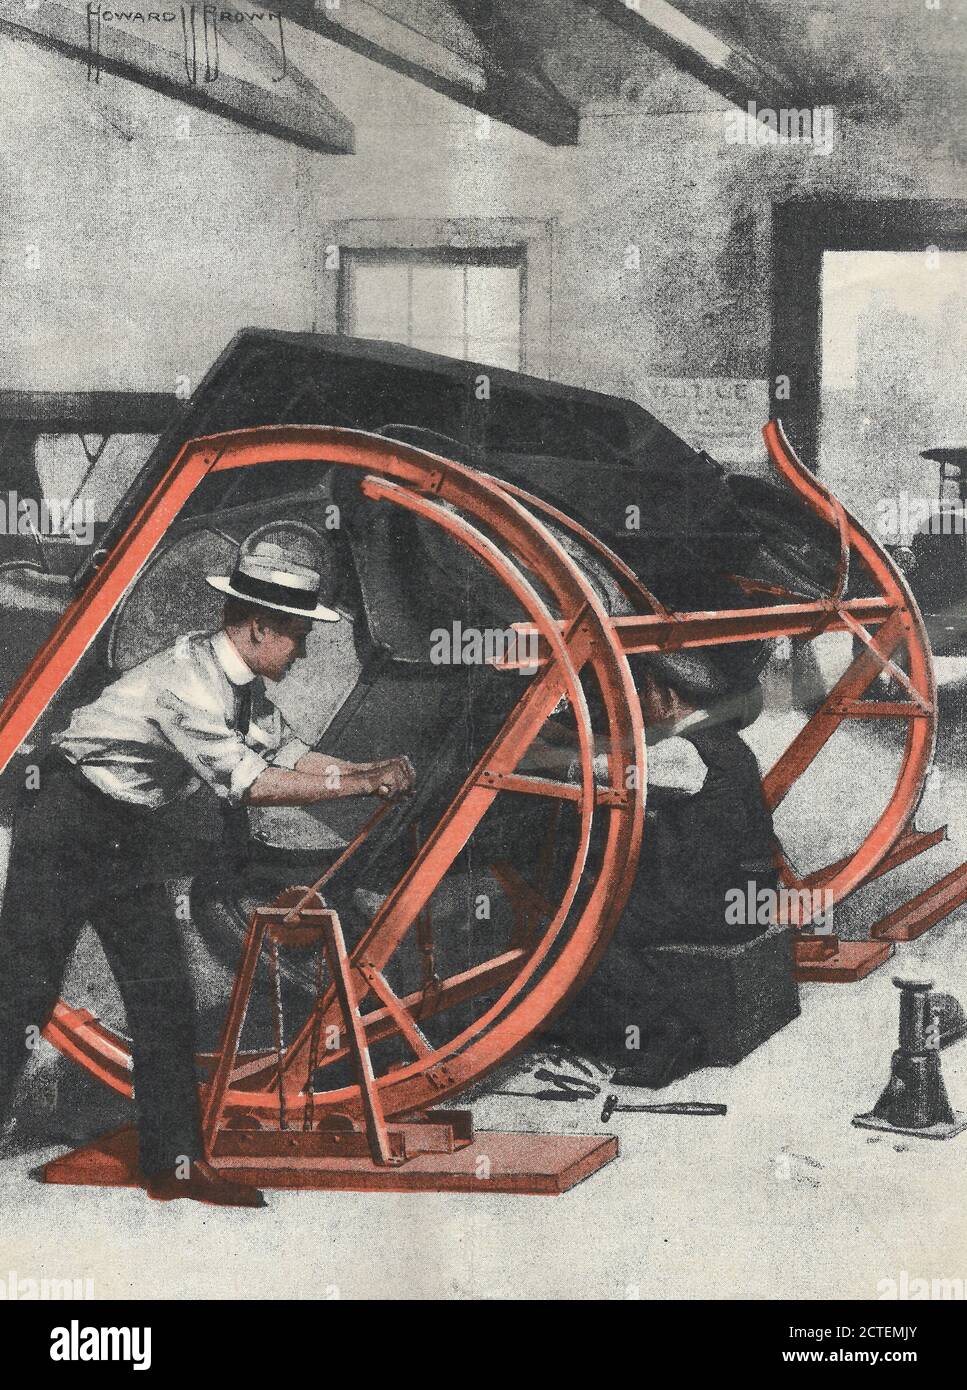 Tourner une automobile pour se mettre en dessous, vers 1919 Banque D'Images